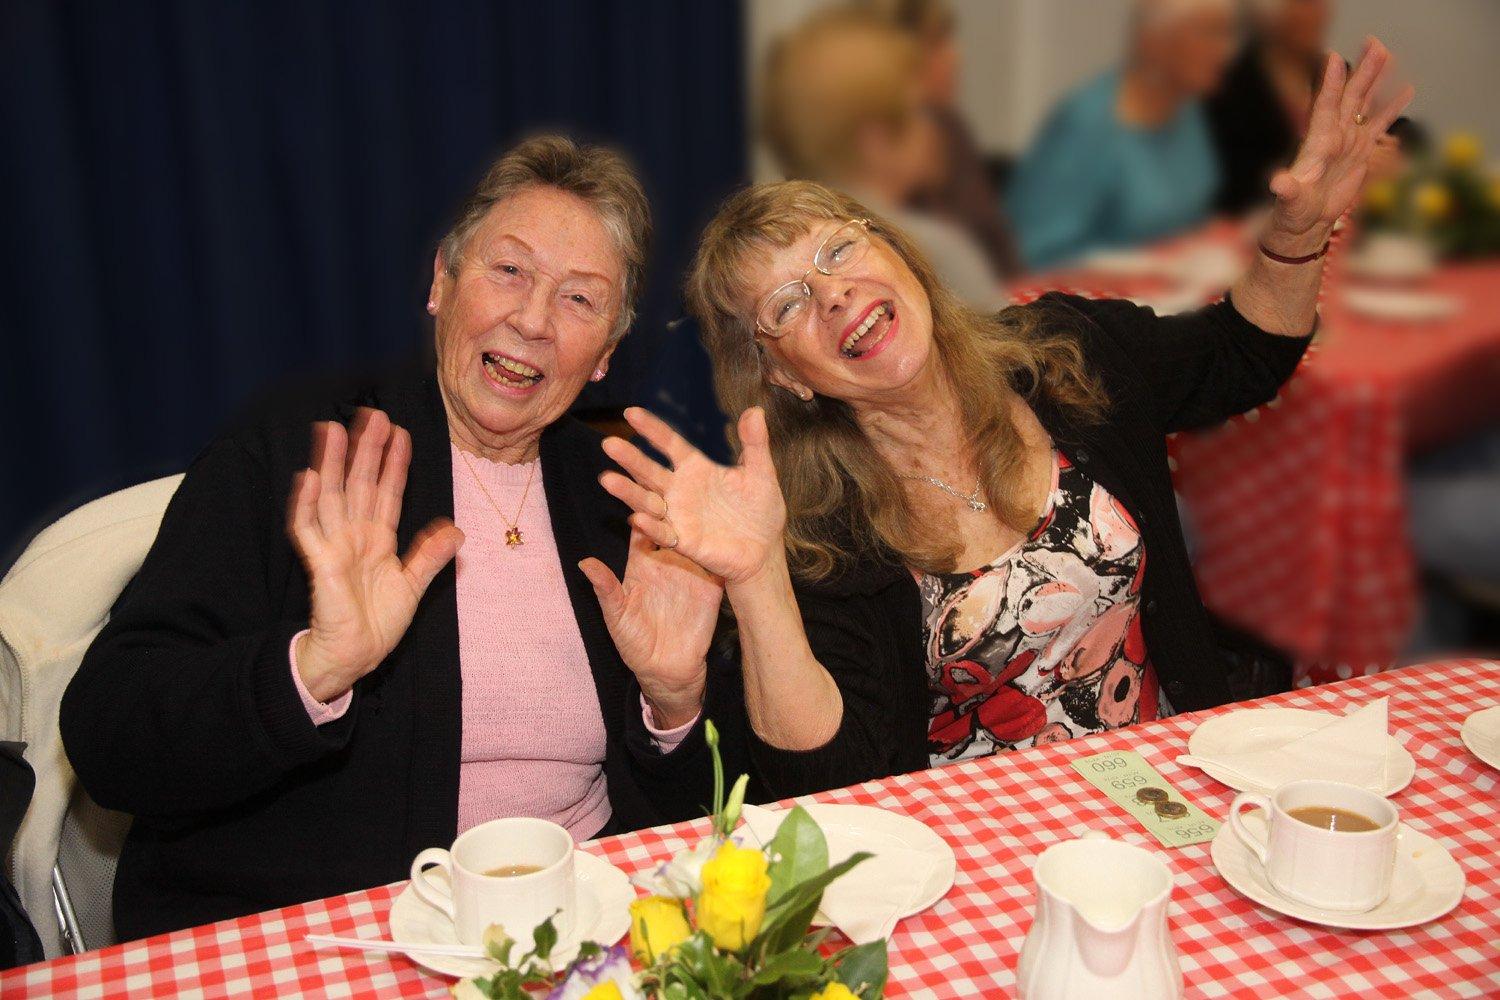 Fun at Uckfield Rotary Seniors' Party